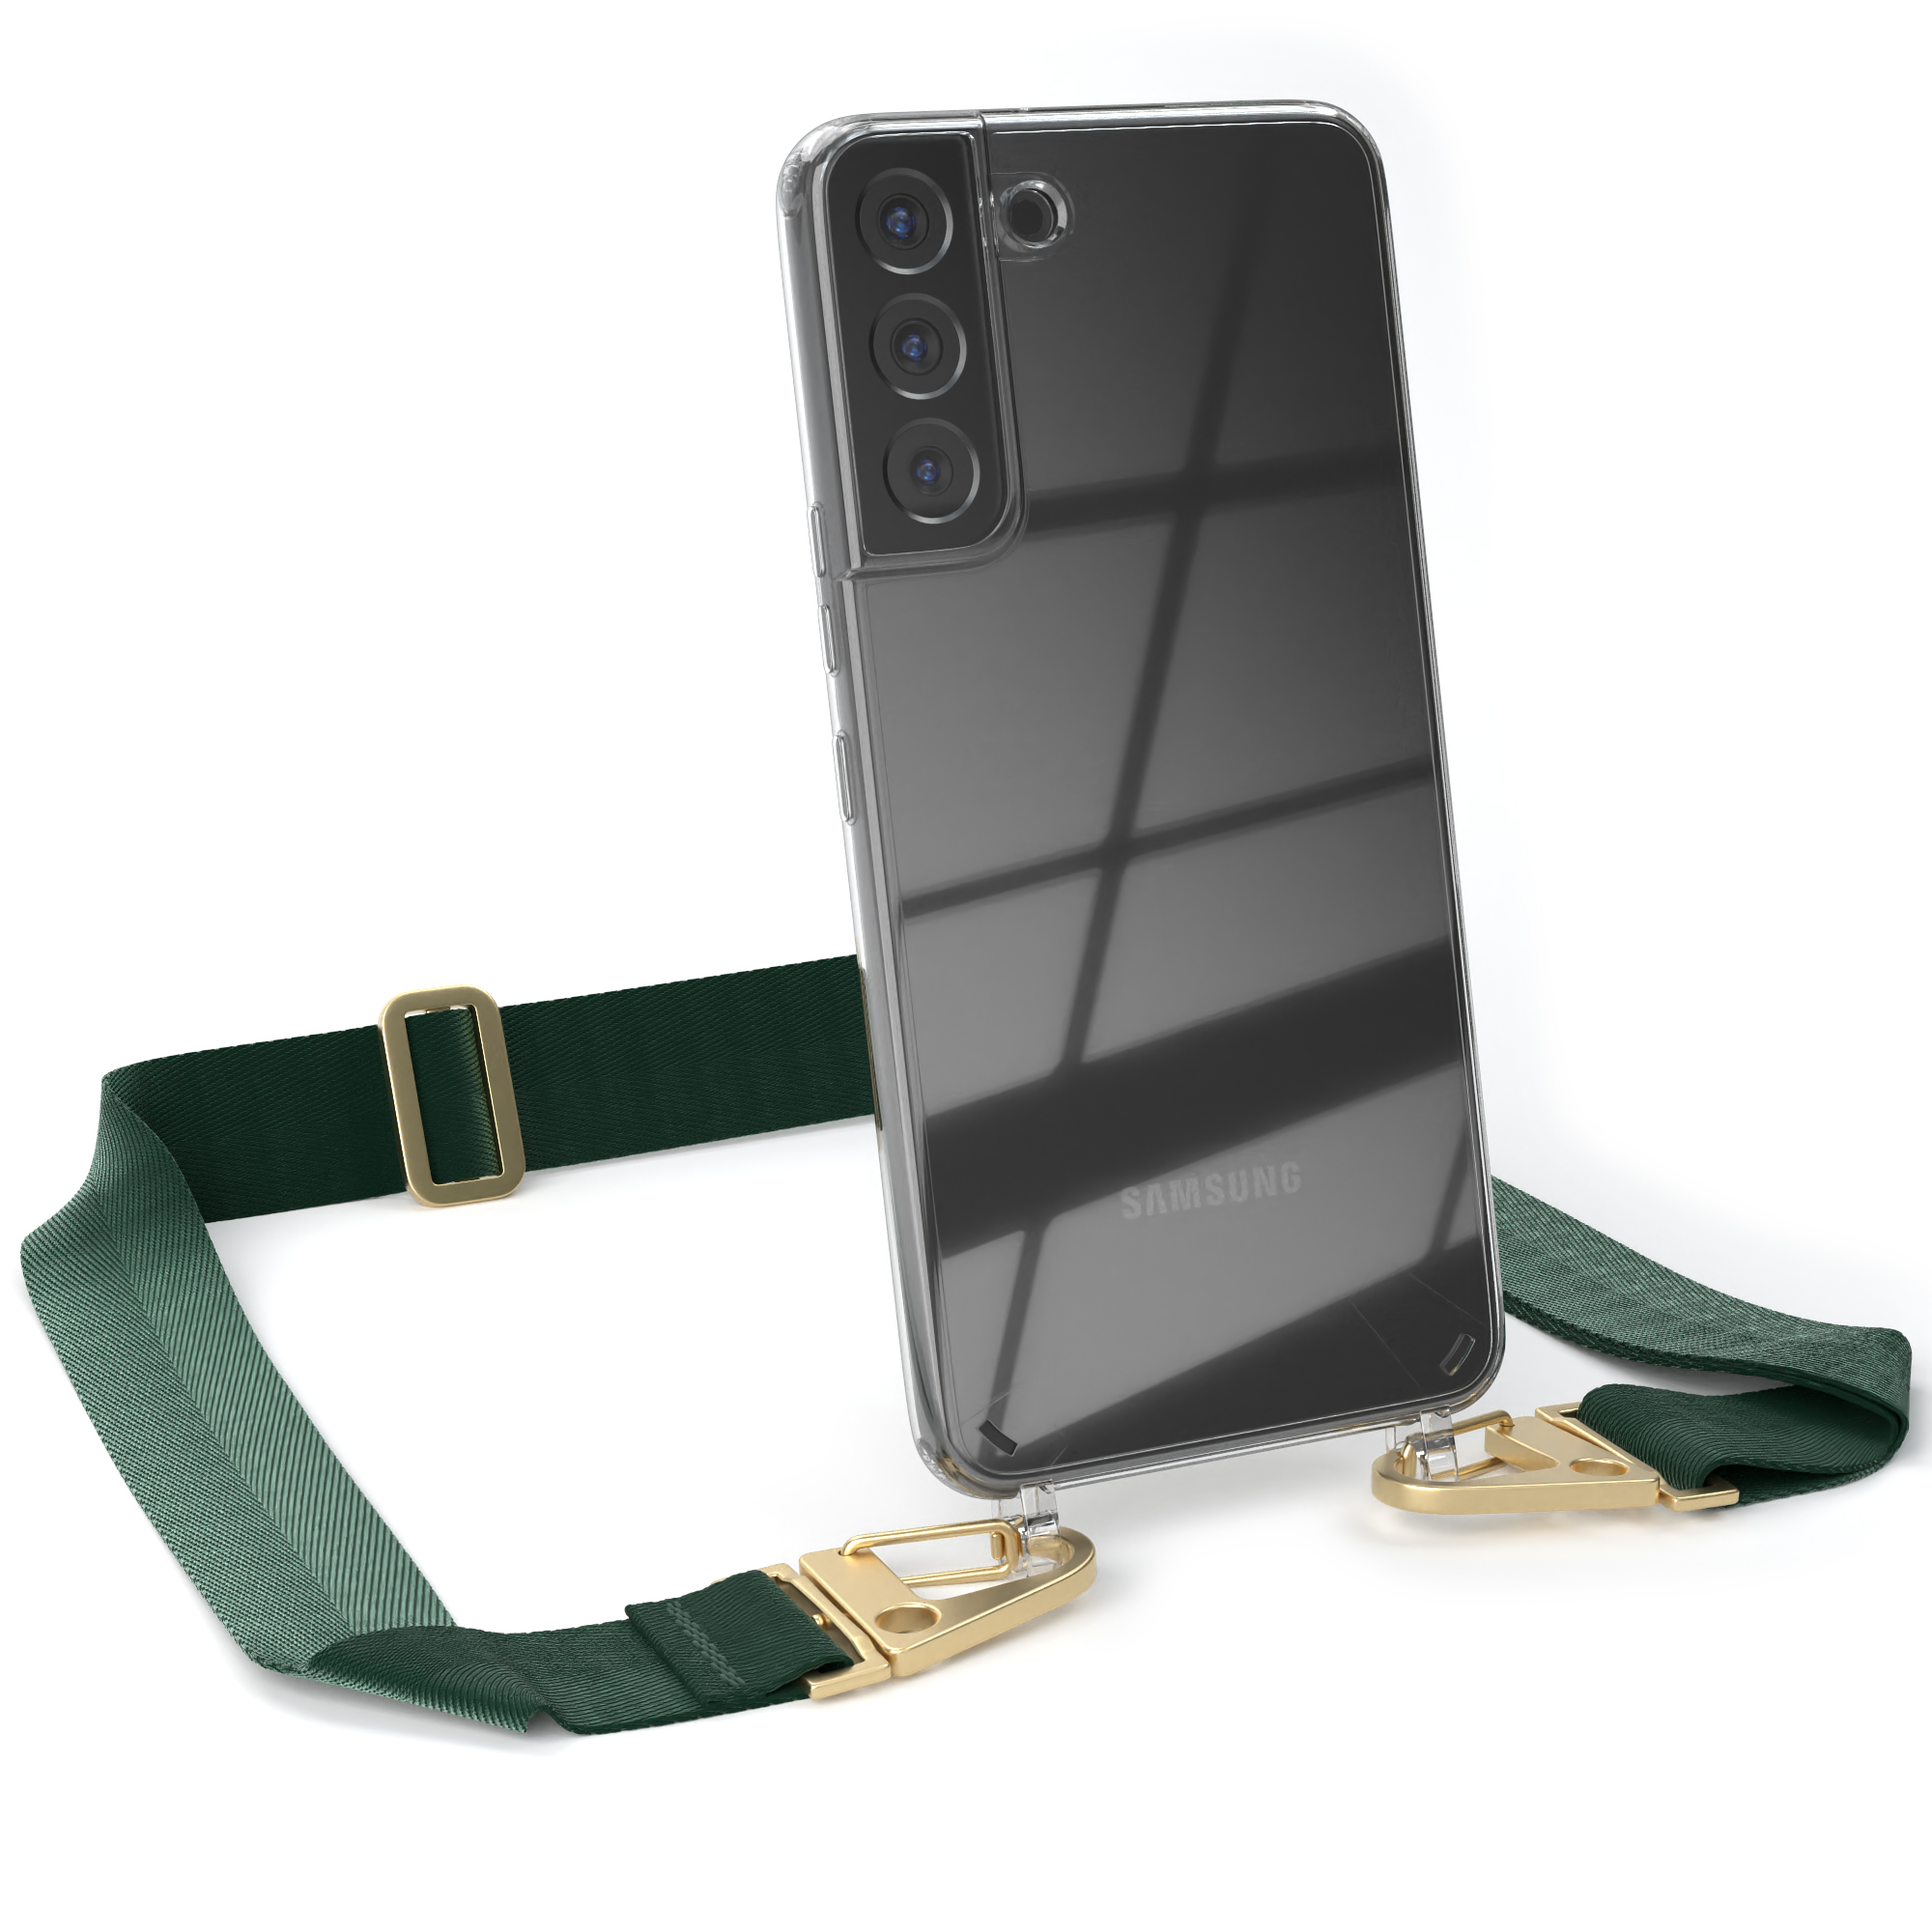 EAZY CASE Transparente Handyhülle breiter Kordel Grün 5G, S22 Karabiner, Plus / mit Dunkel Gold Galaxy + Samsung, Umhängetasche